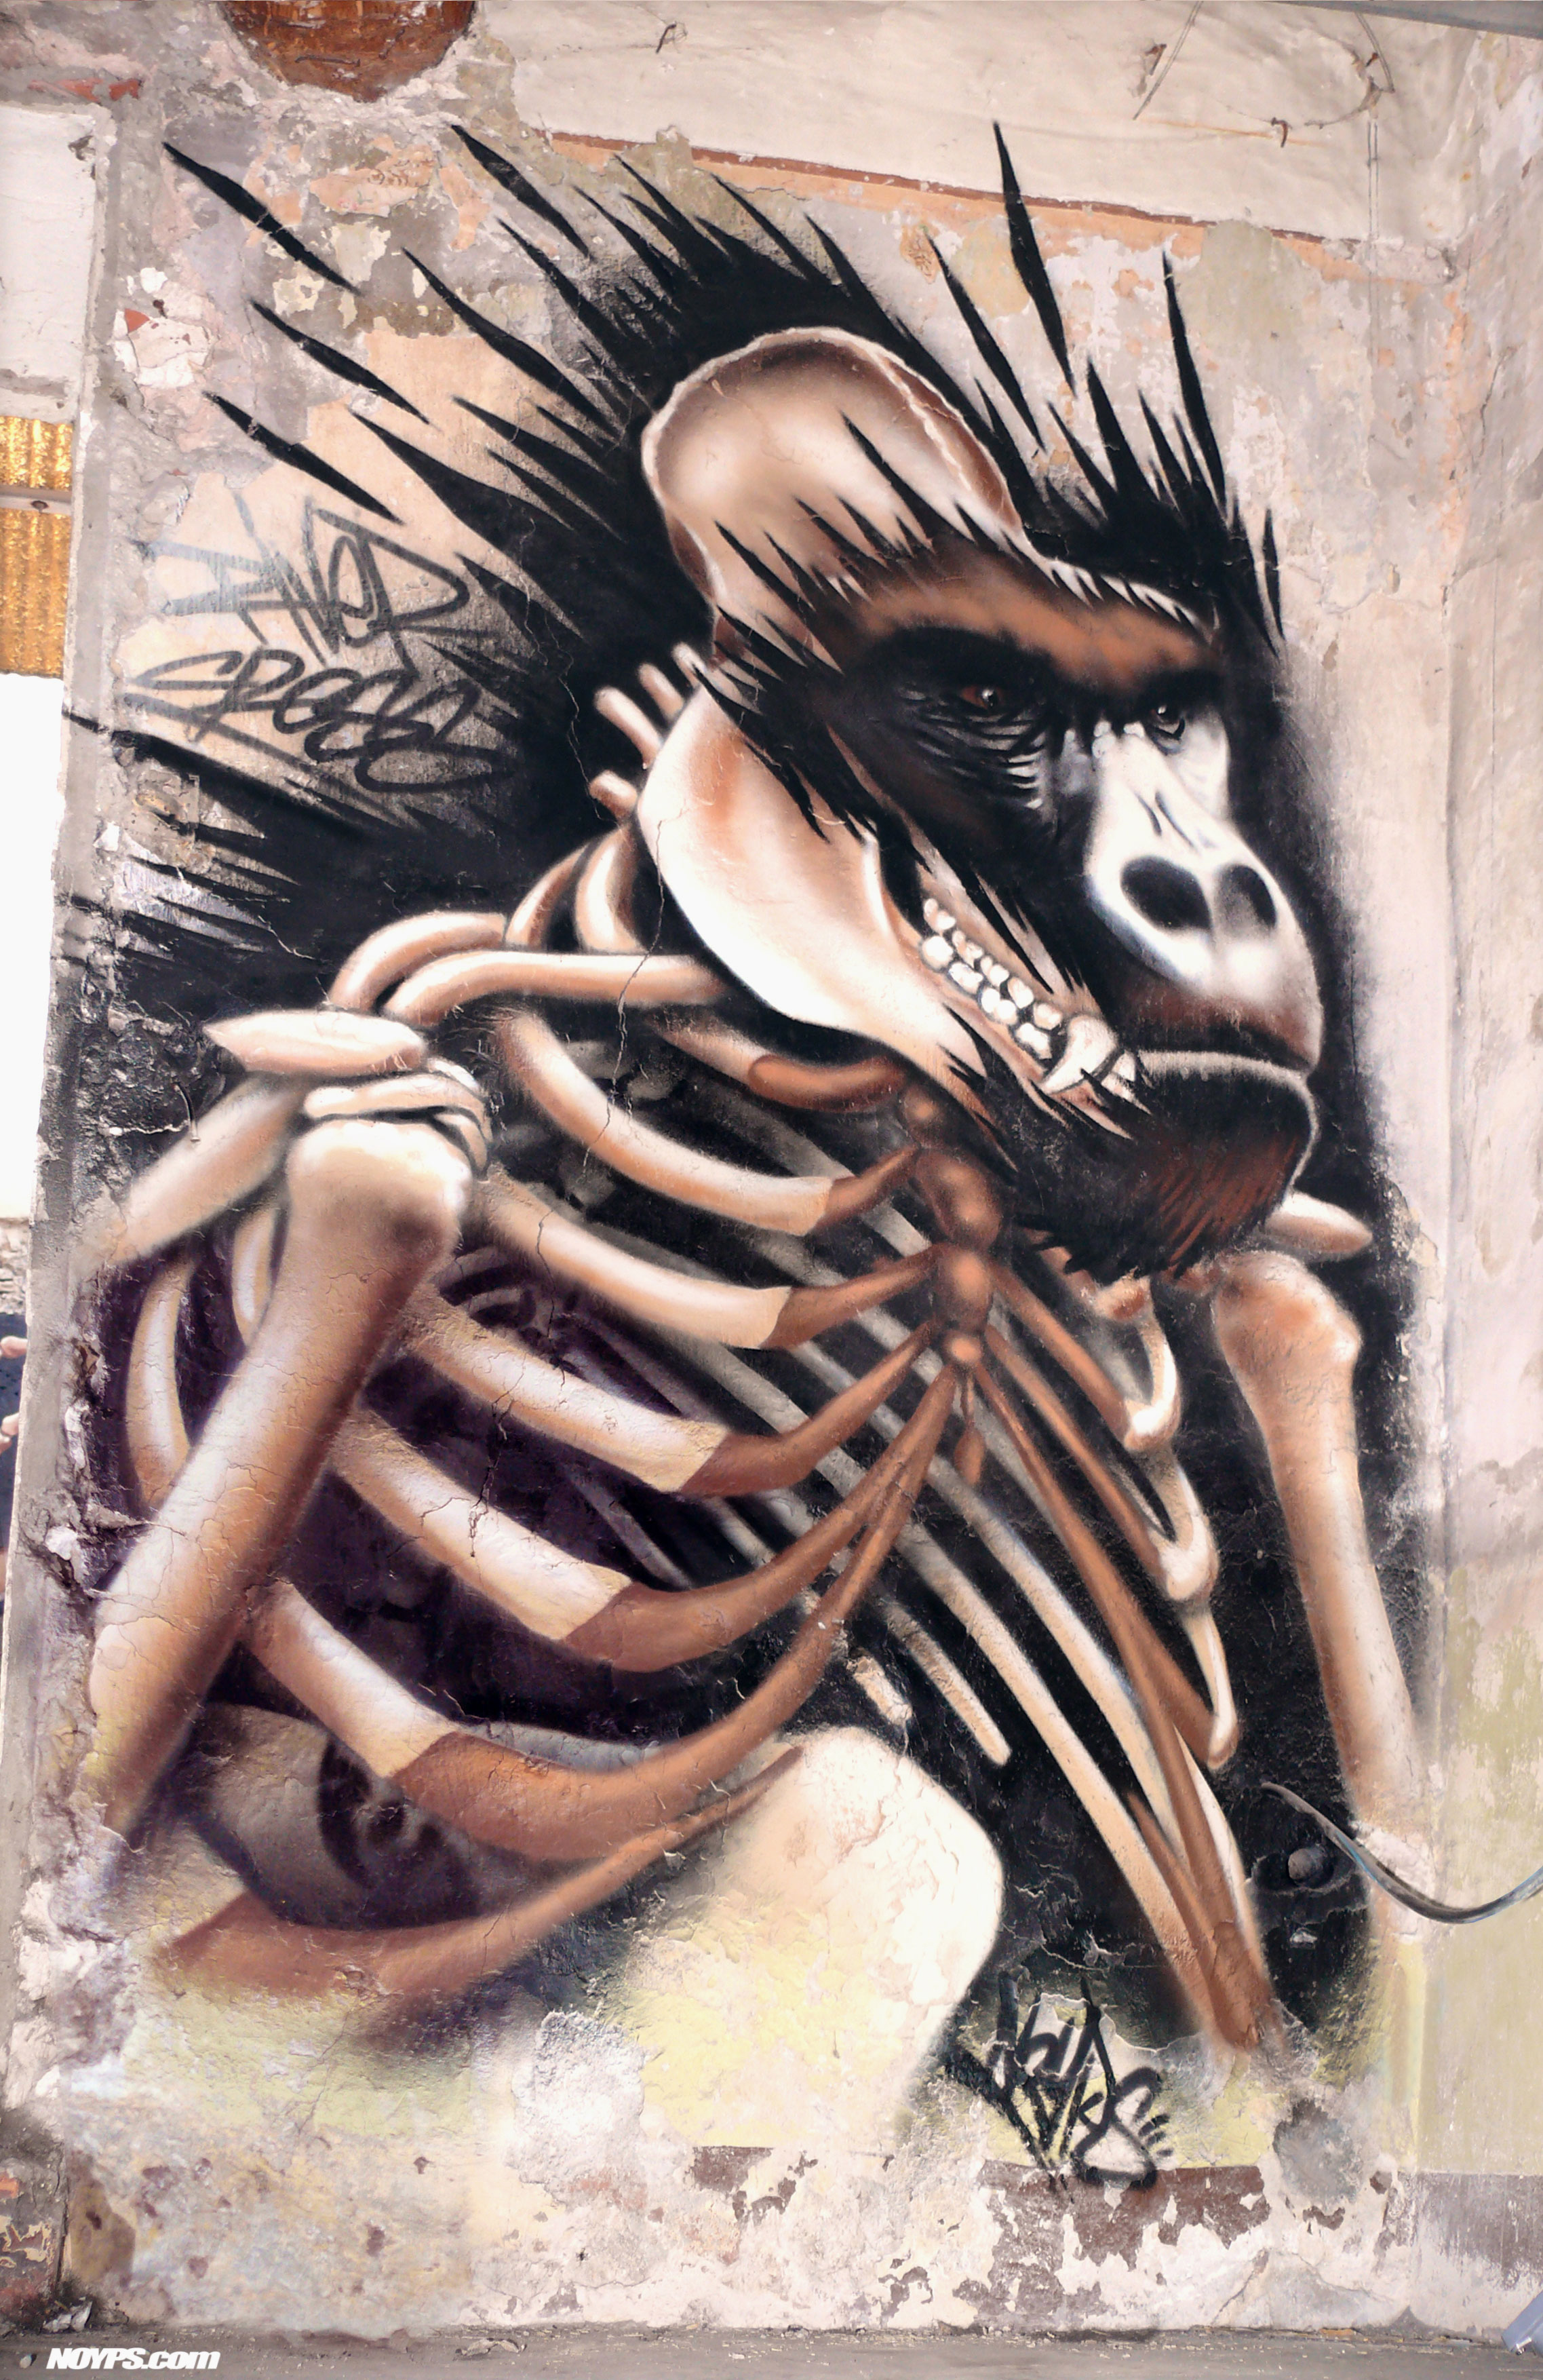 graffiti Marseille gorille noyps 2016 France